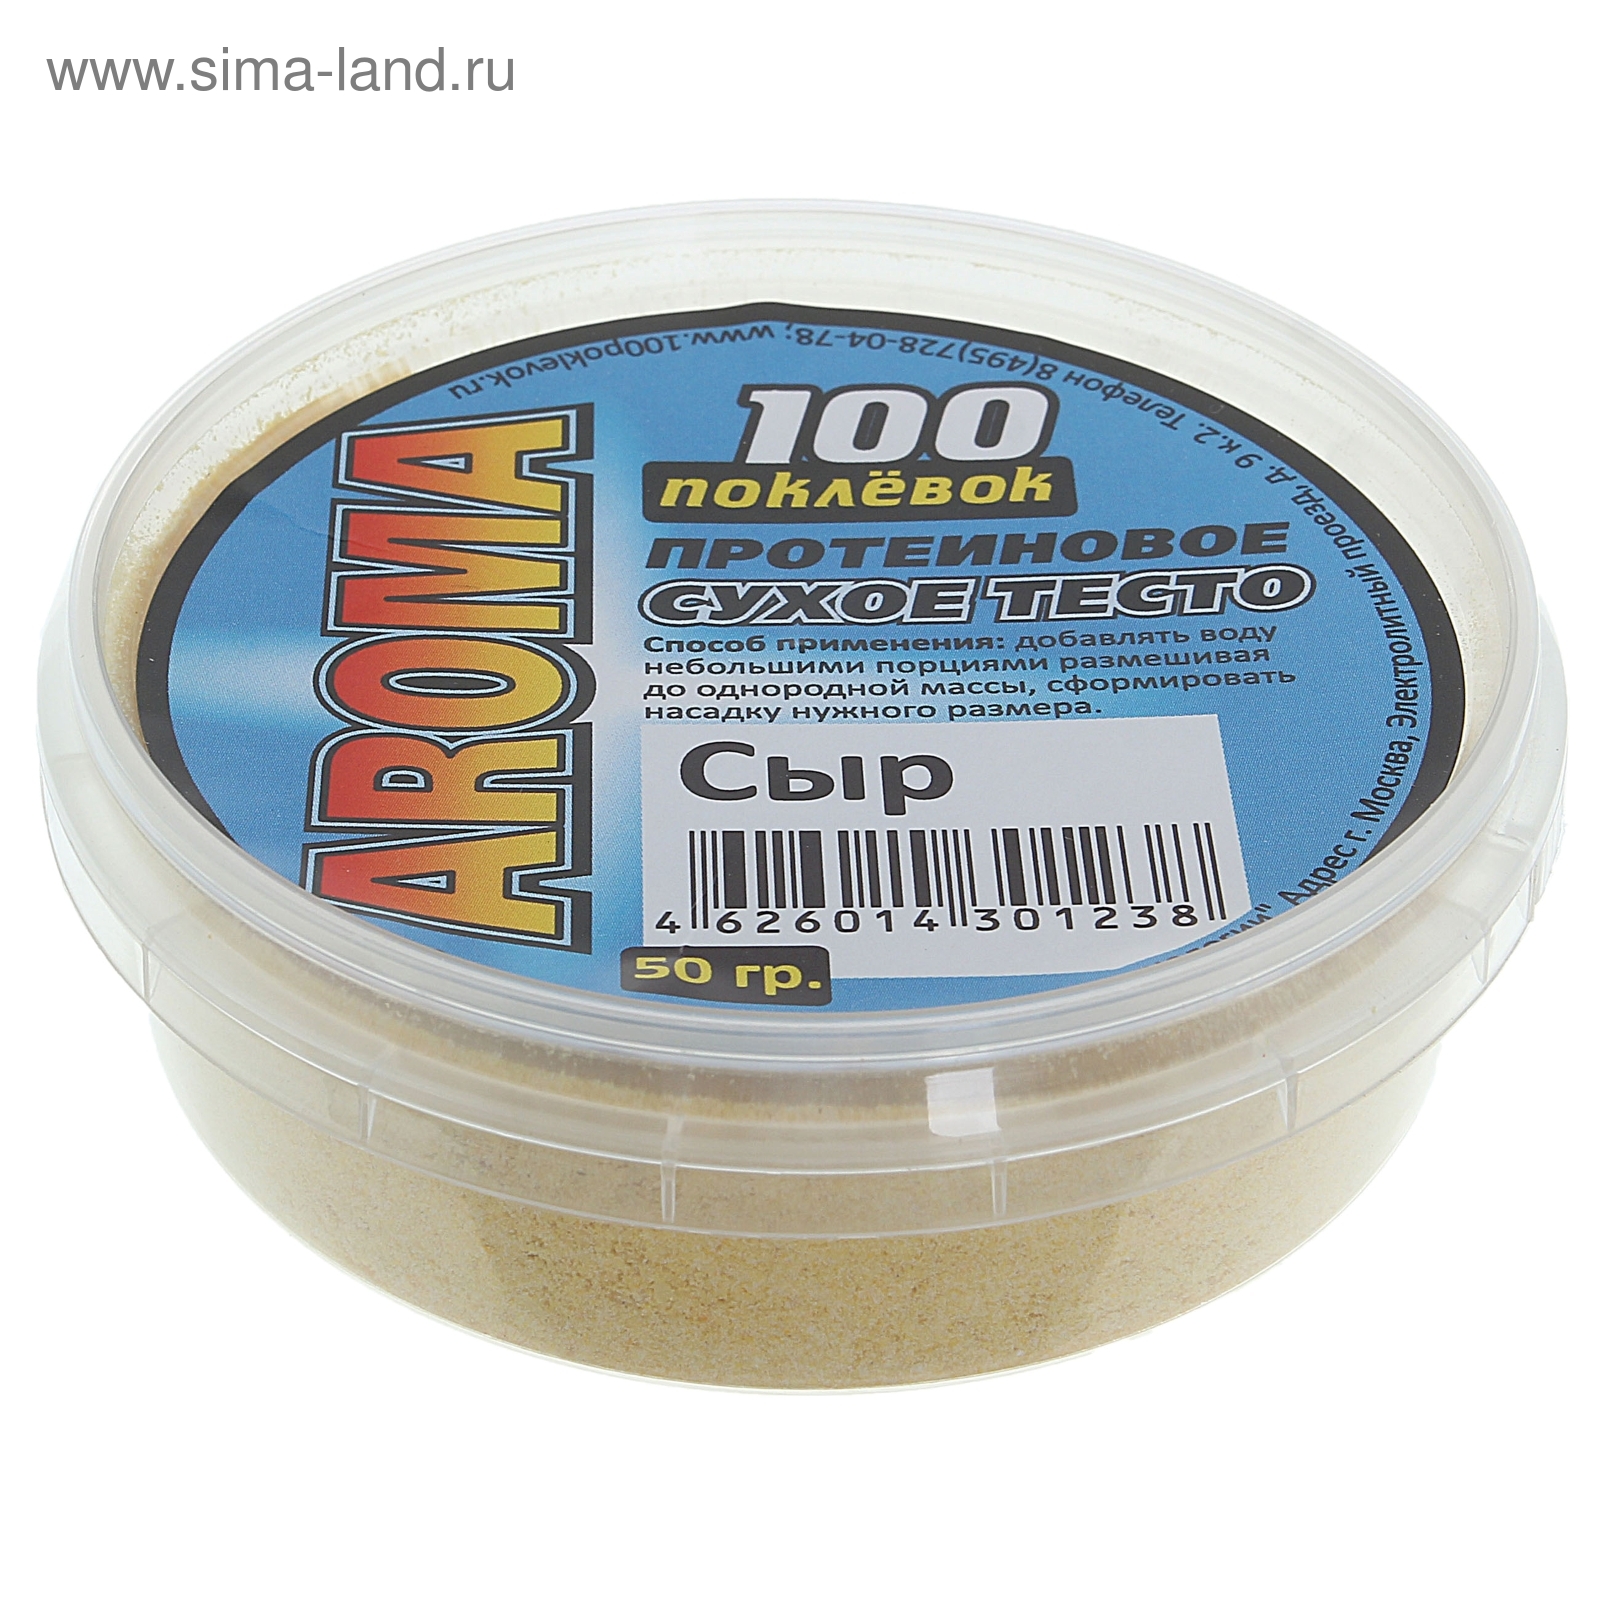 Тесто сухое протеиновое "100 Поклёвок" AROMA Сыр, вес 50 г